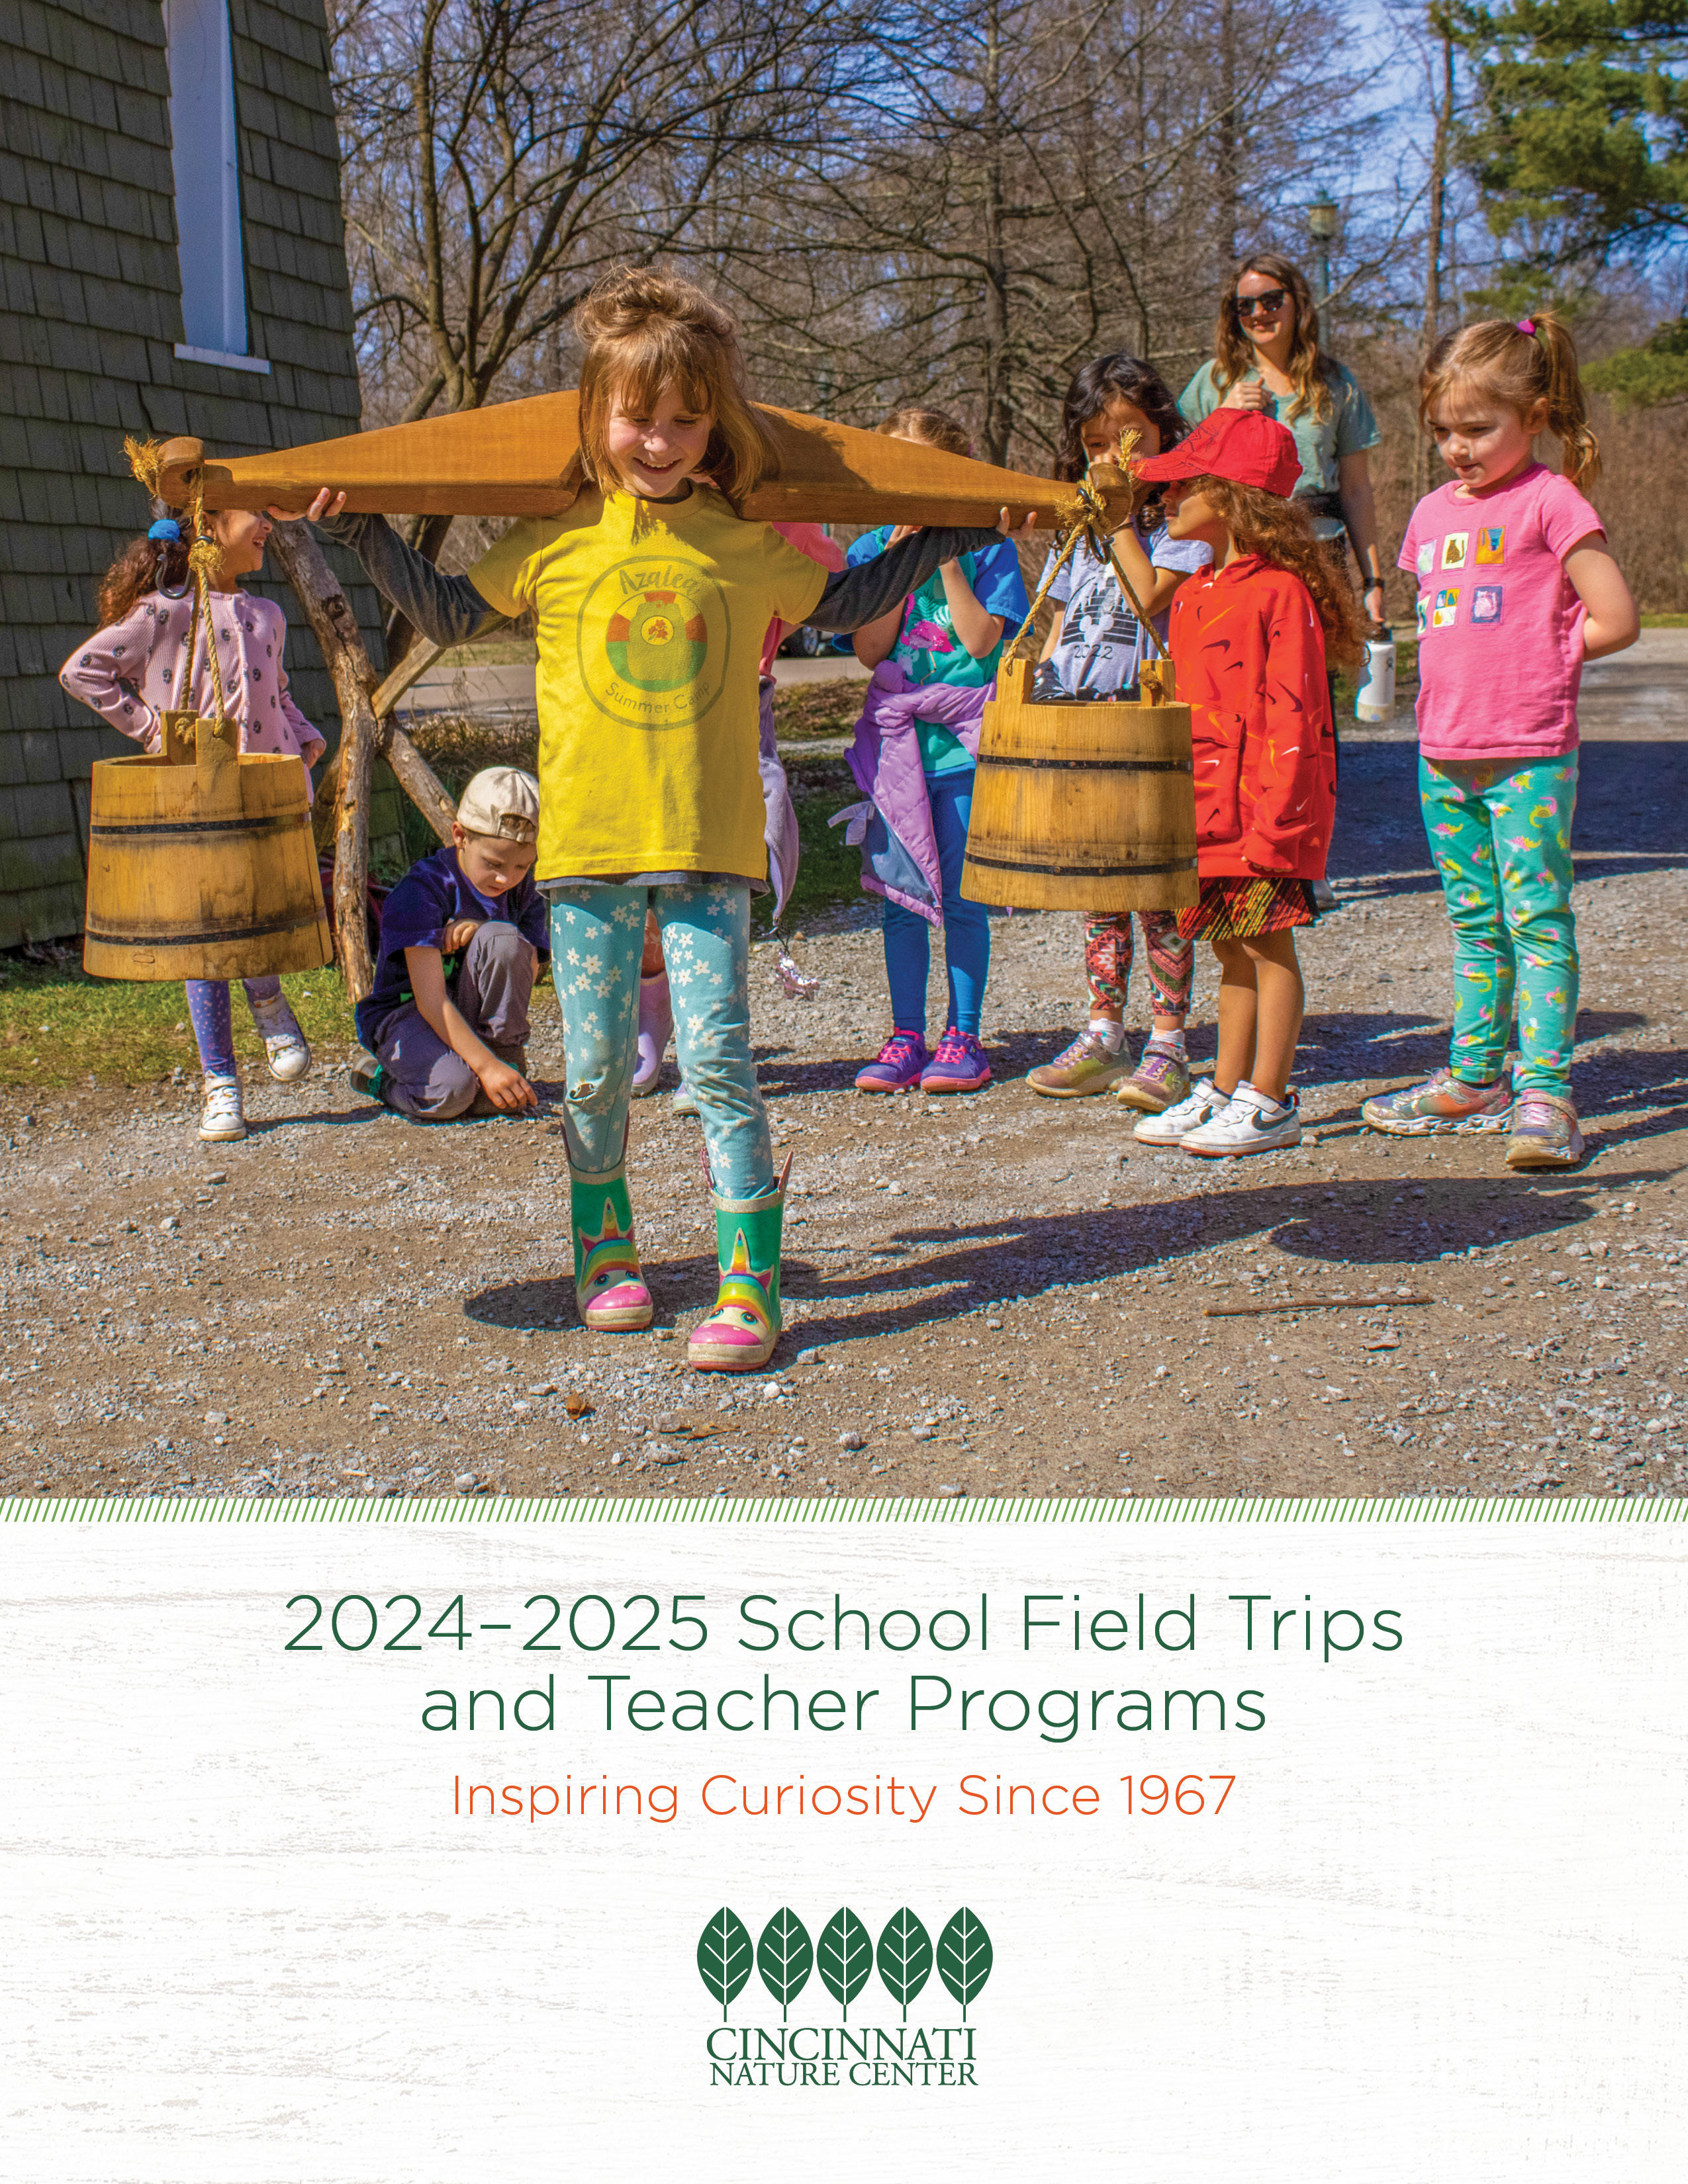 2023-2025 School Field Trips and Teacher Programs brochure